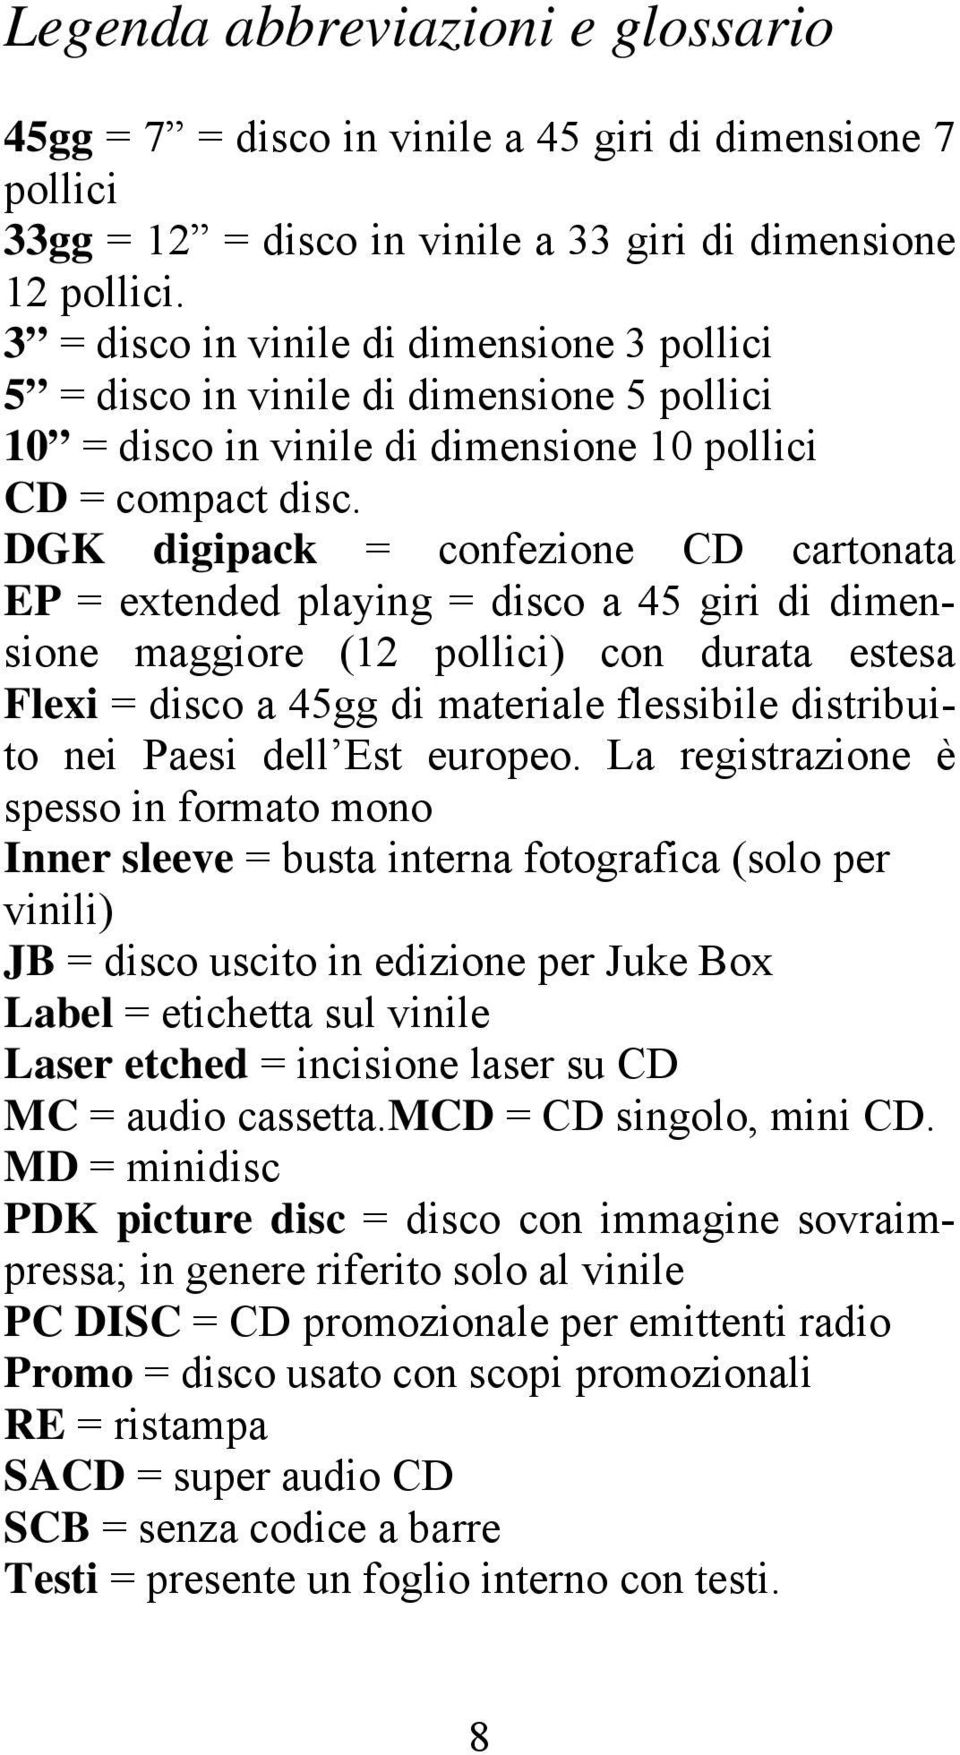 DGK digipack = confezione CD cartonata EP = extended playing = disco a 45 giri di dimensione maggiore (12 pollici) con durata estesa Flexi = disco a 45gg di materiale flessibile distribuito nei Paesi